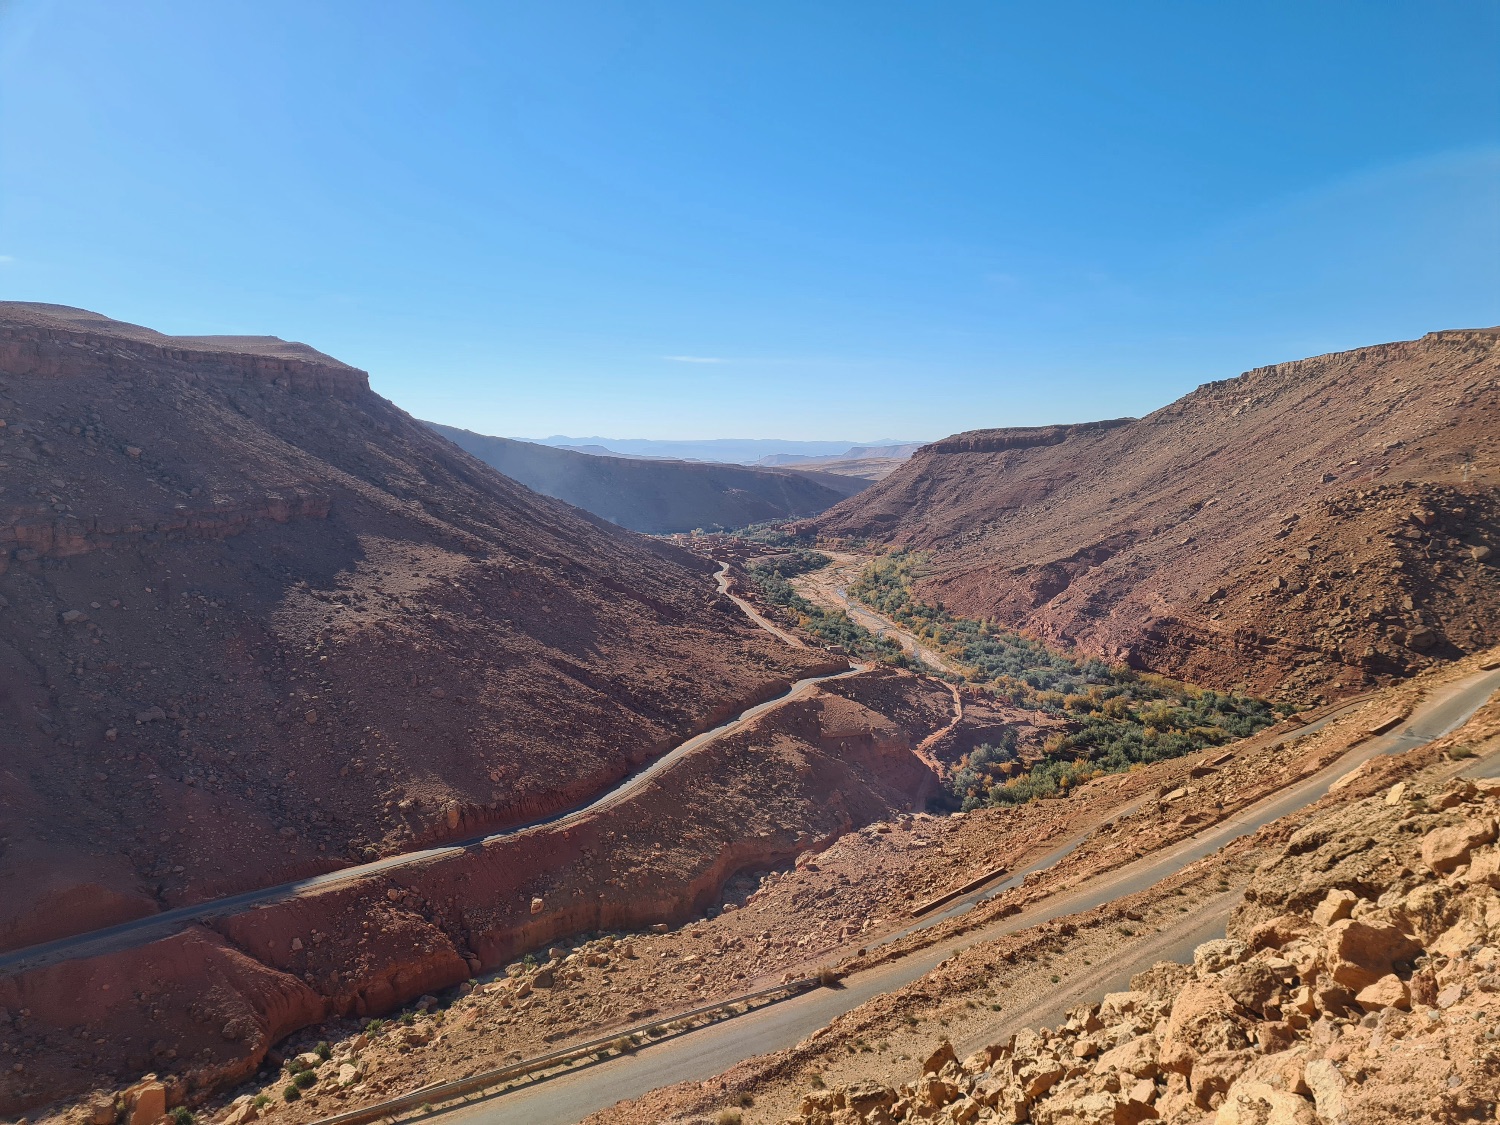 Valley on the way to Aït Ben Haddou